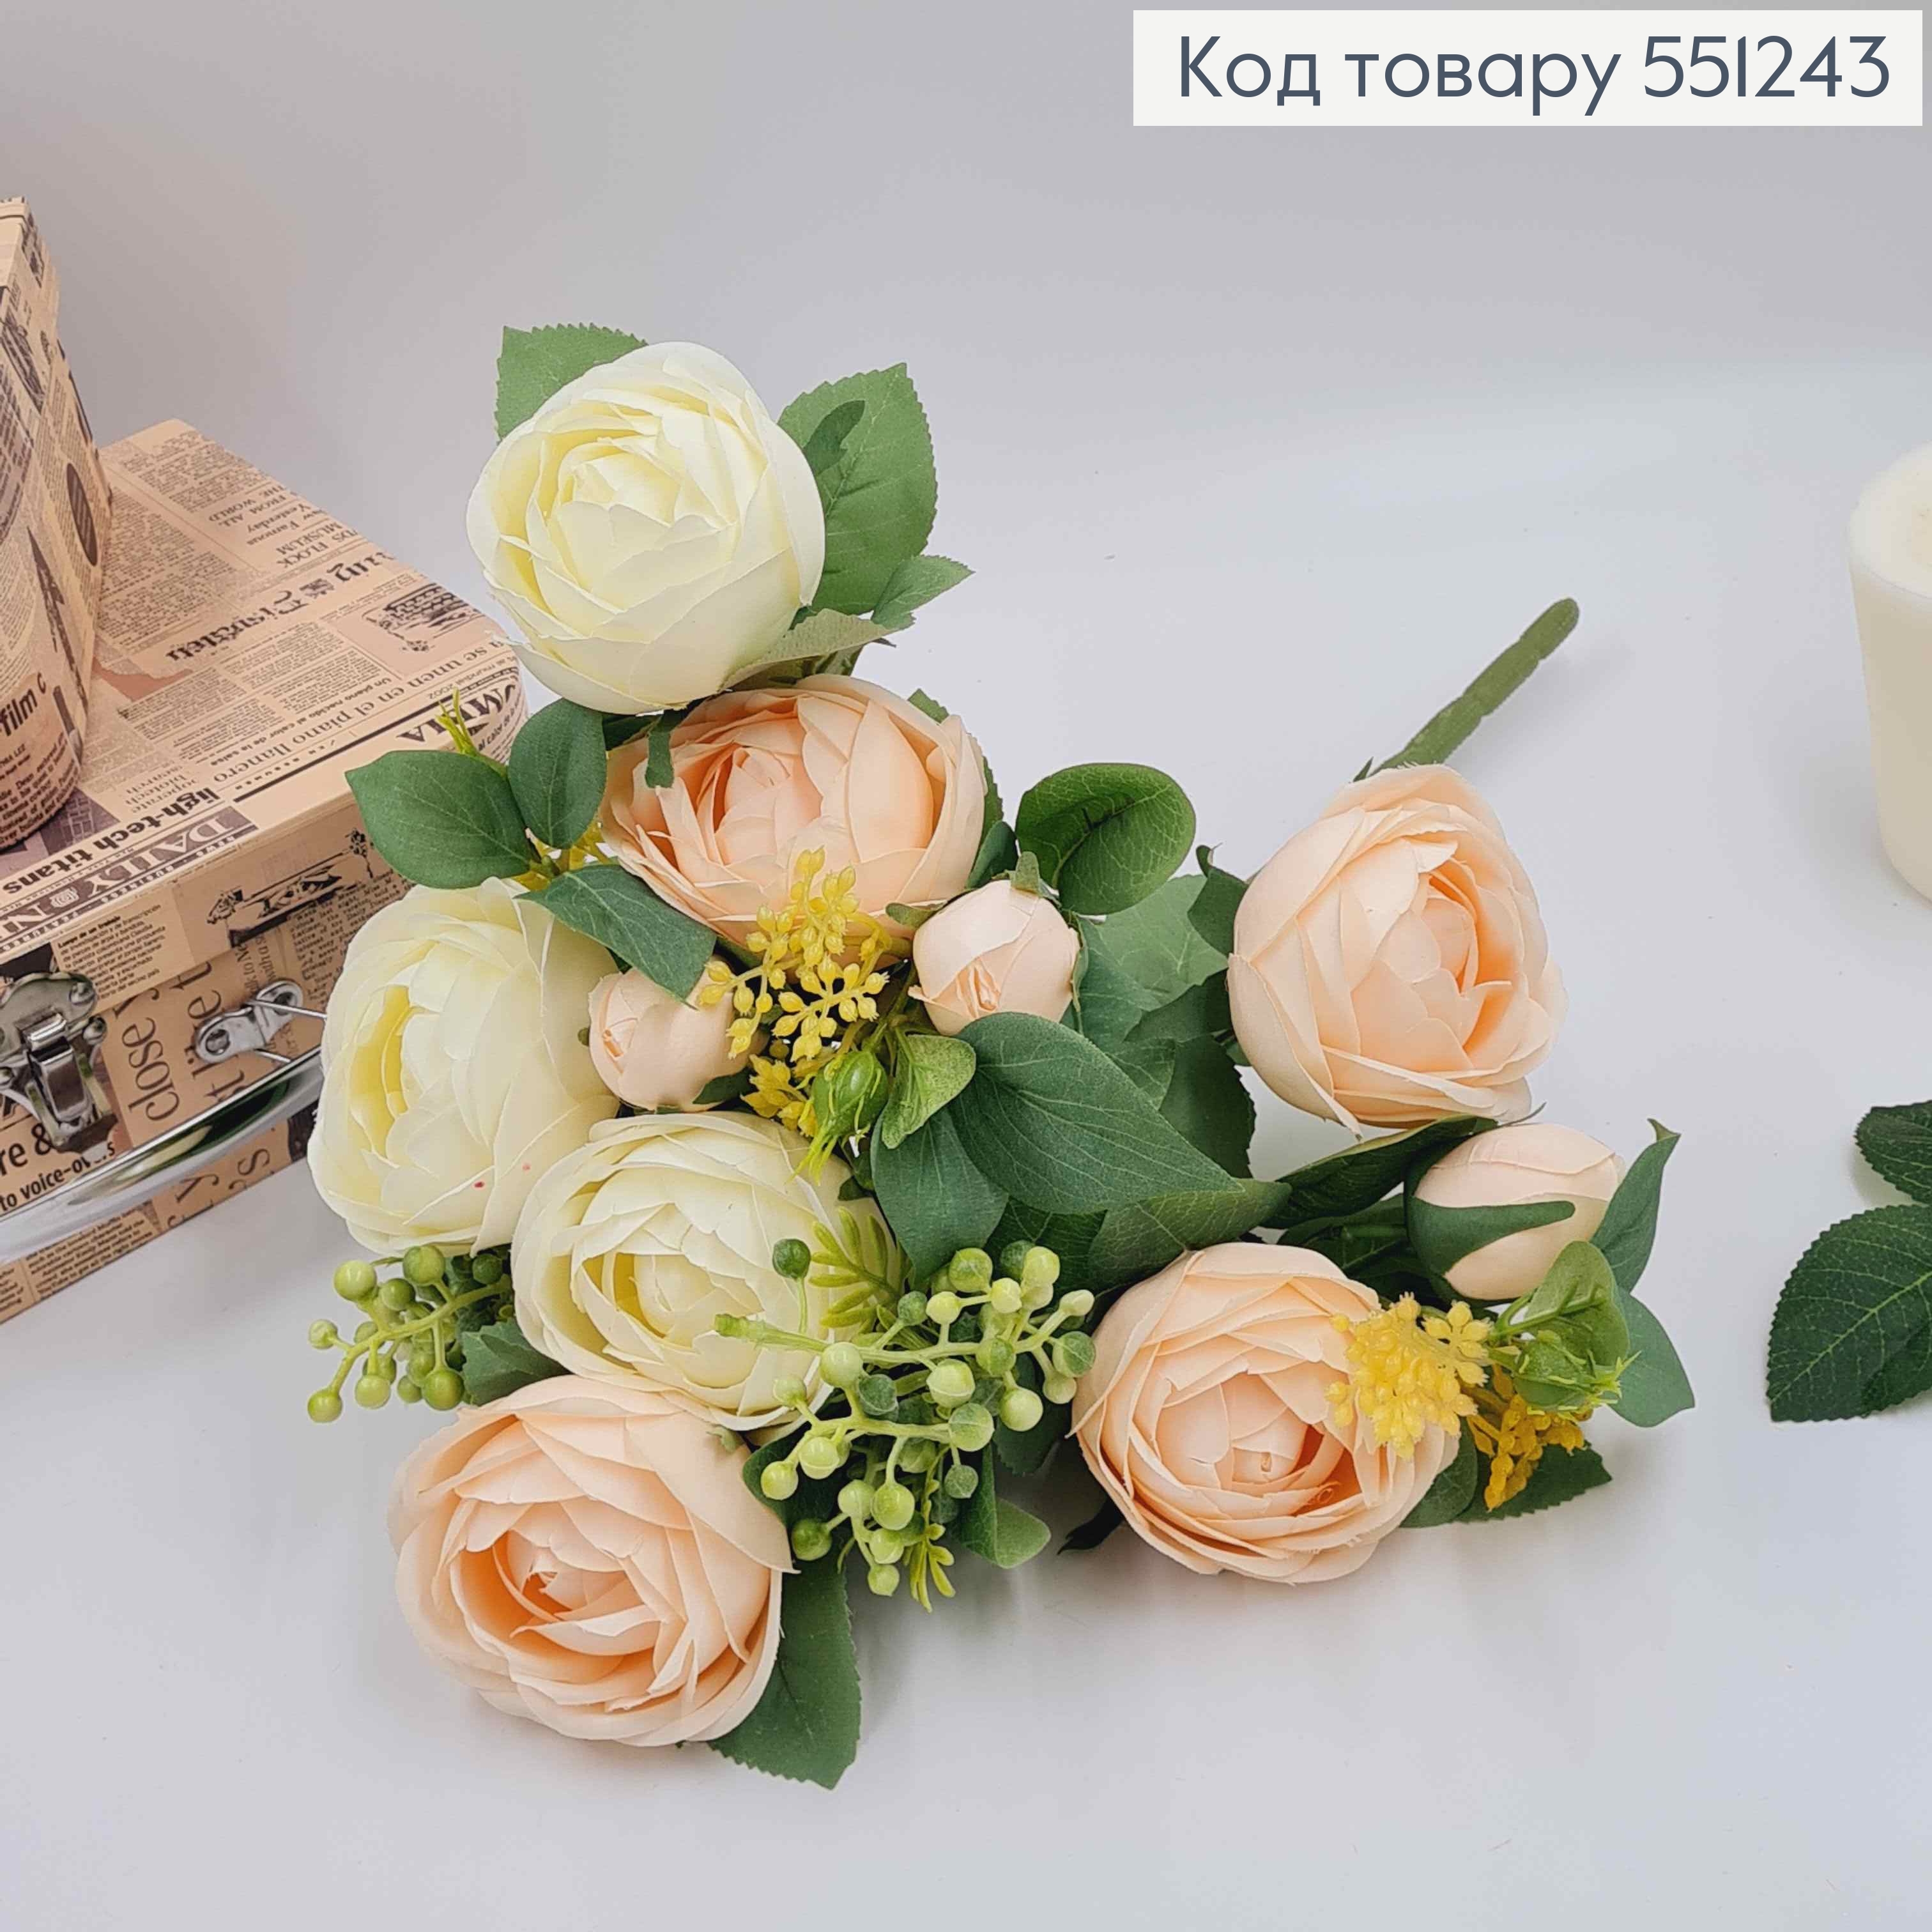 Композиция "Букет Белые и Пудровые розы Камелия с зеленым декором", высотой 46см 551243 фото 2